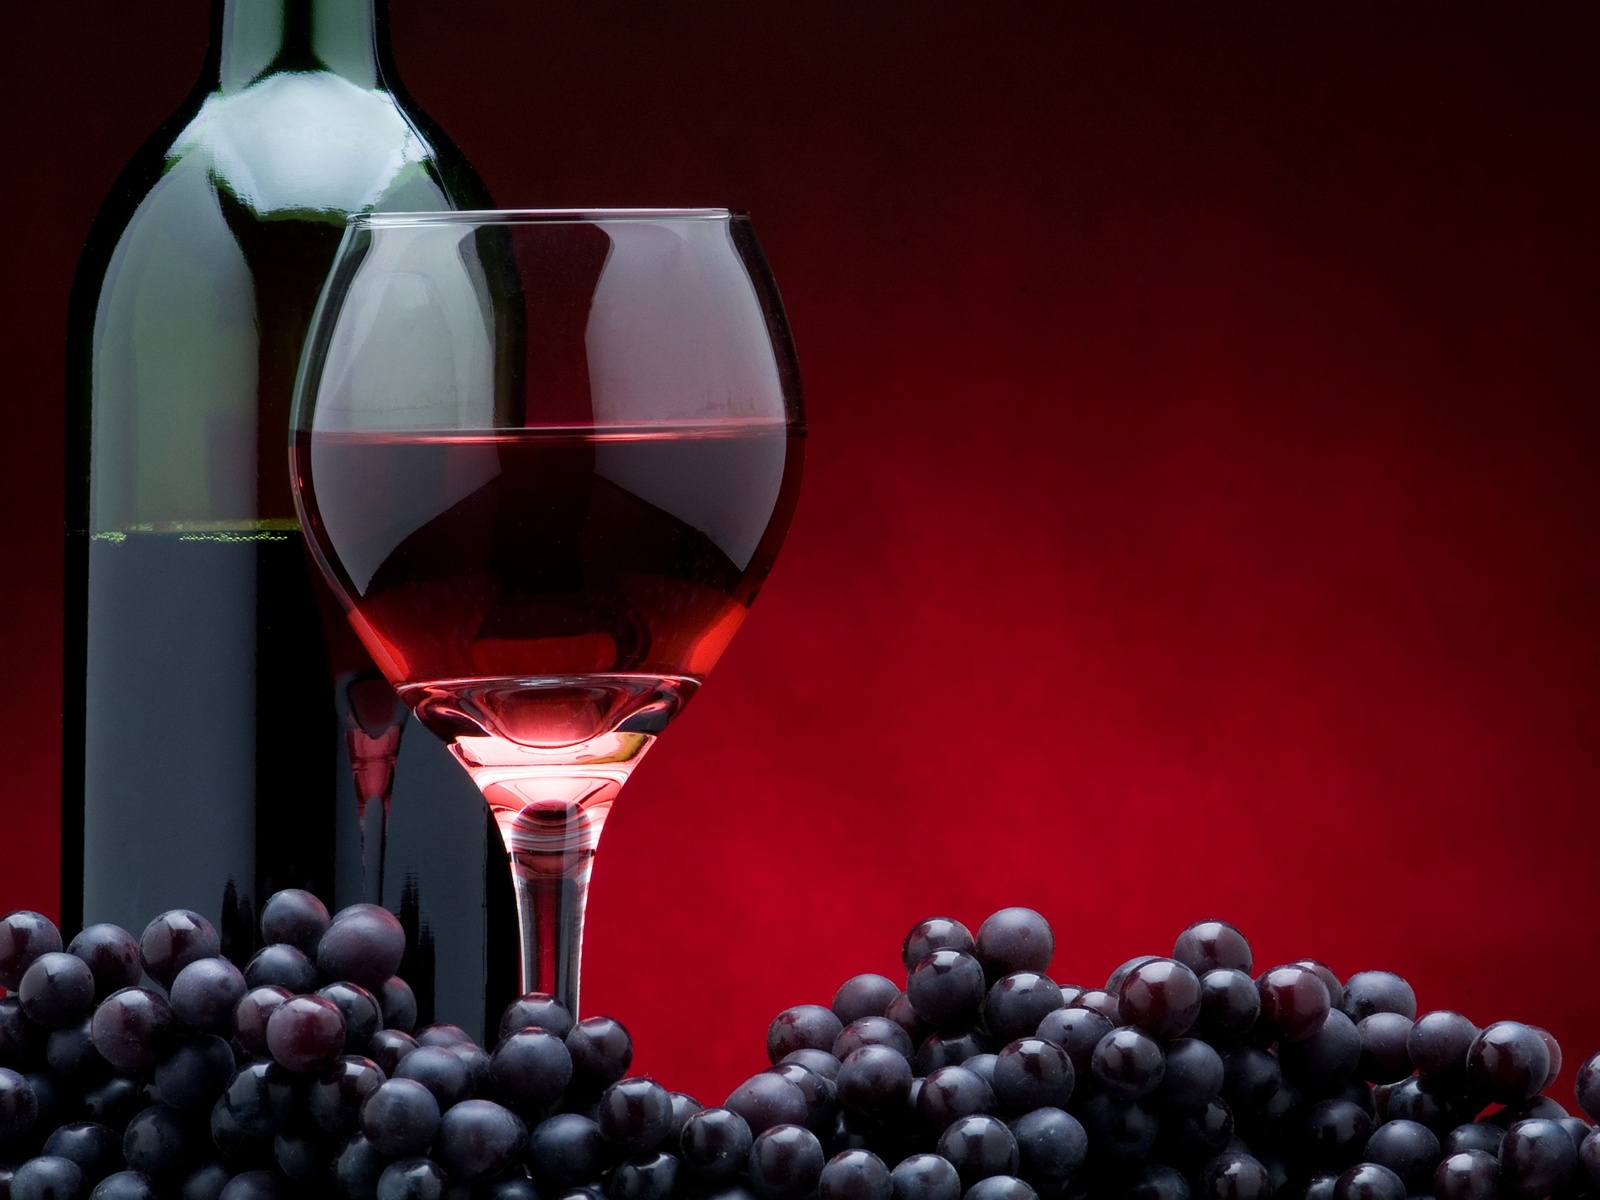 Fotos de vino de uva Mejores fotos del mundo para facebook